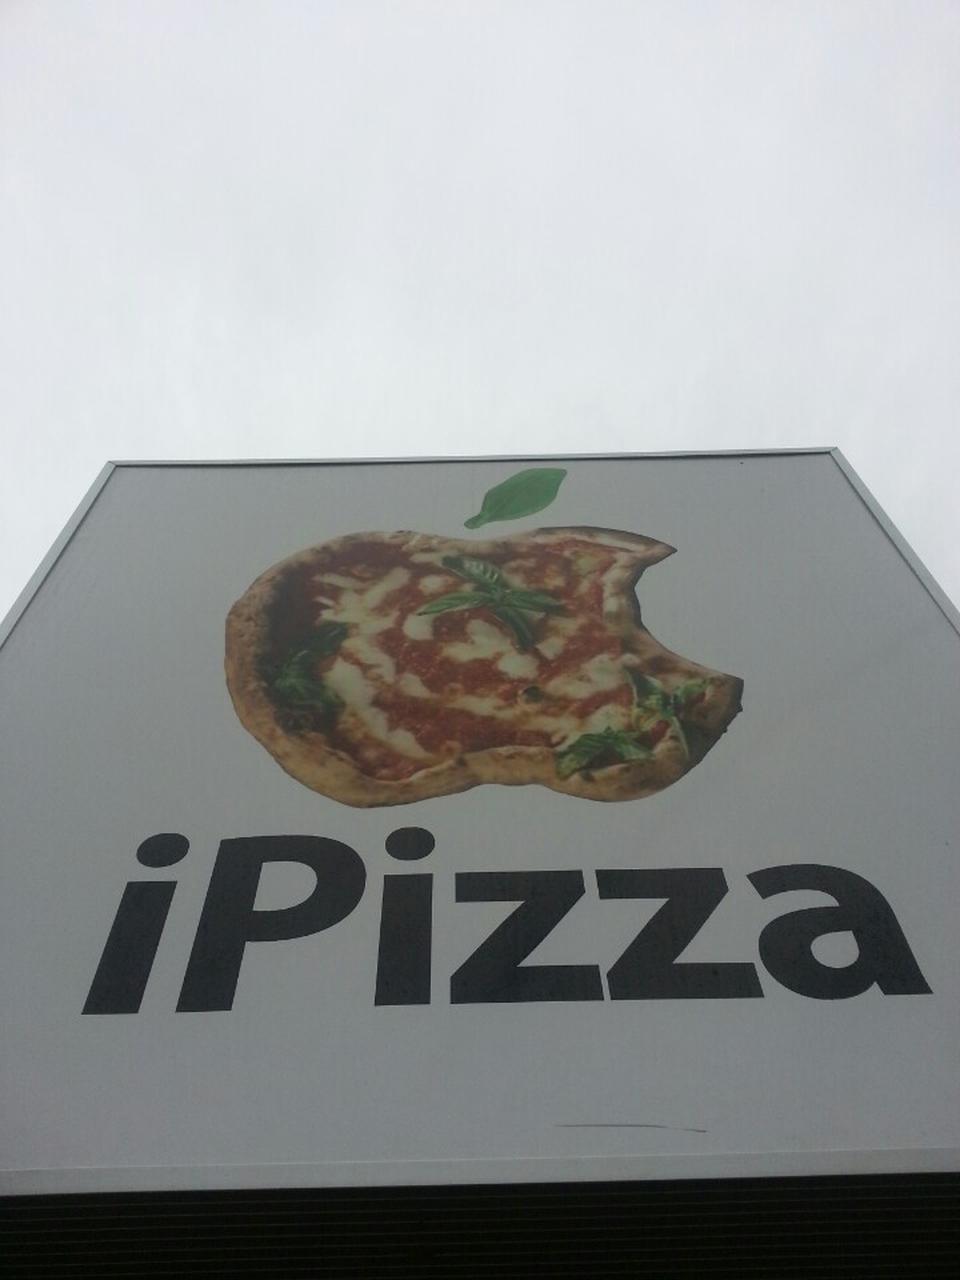 IPizza